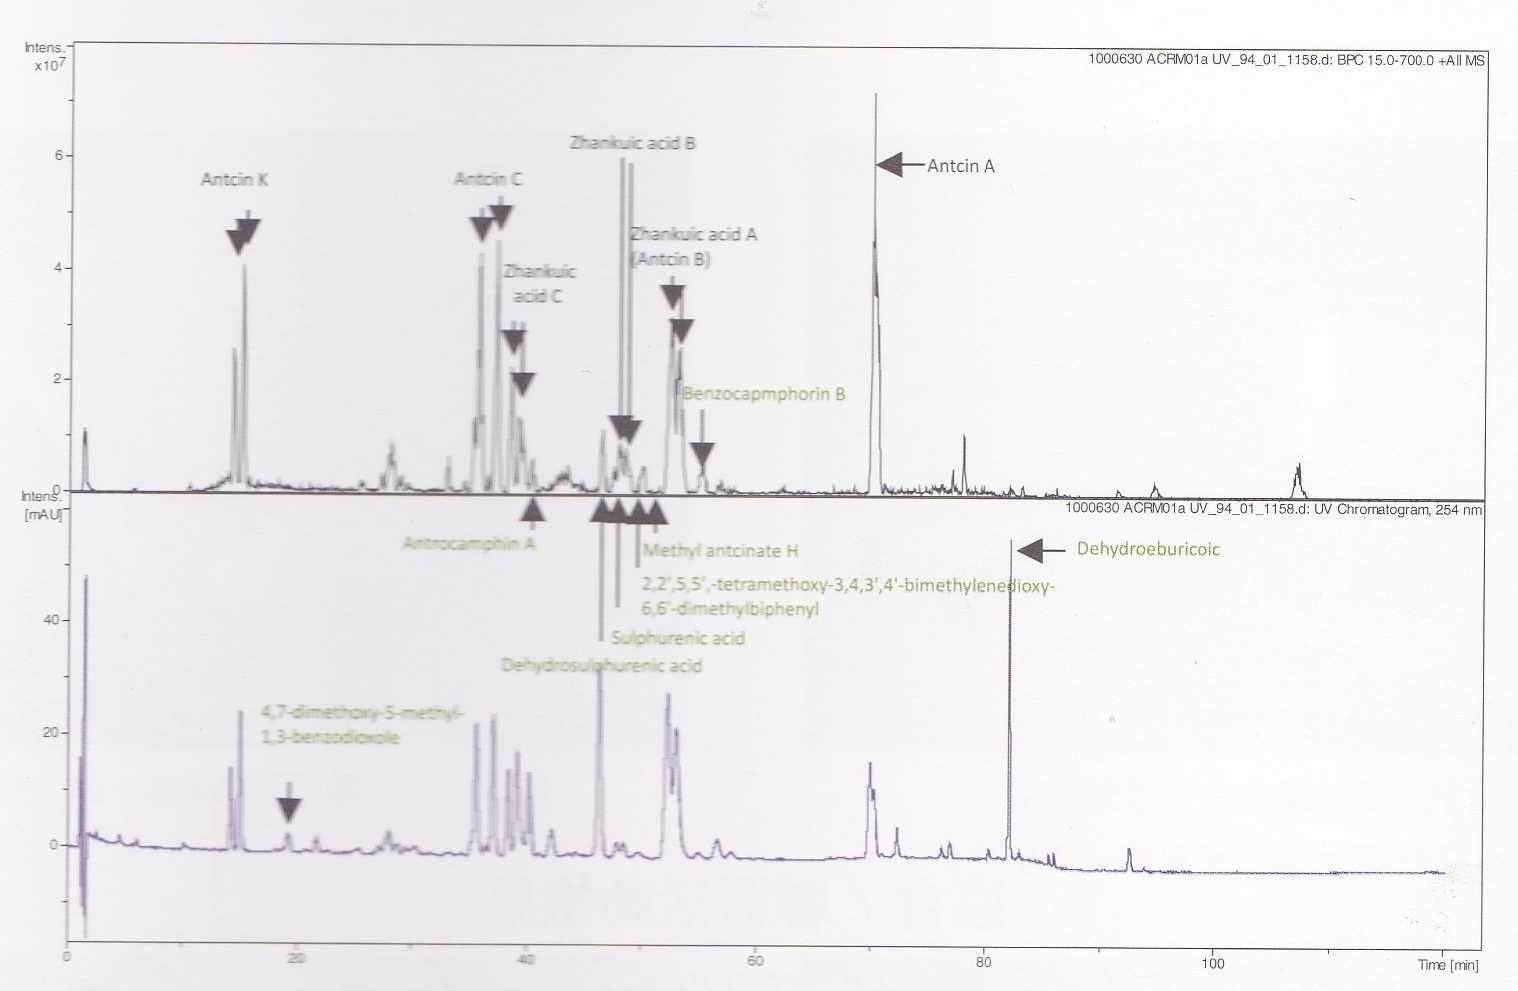 牛樟菇(牛樟芝)子實體八種指標性成份液相層分析圖HPLC